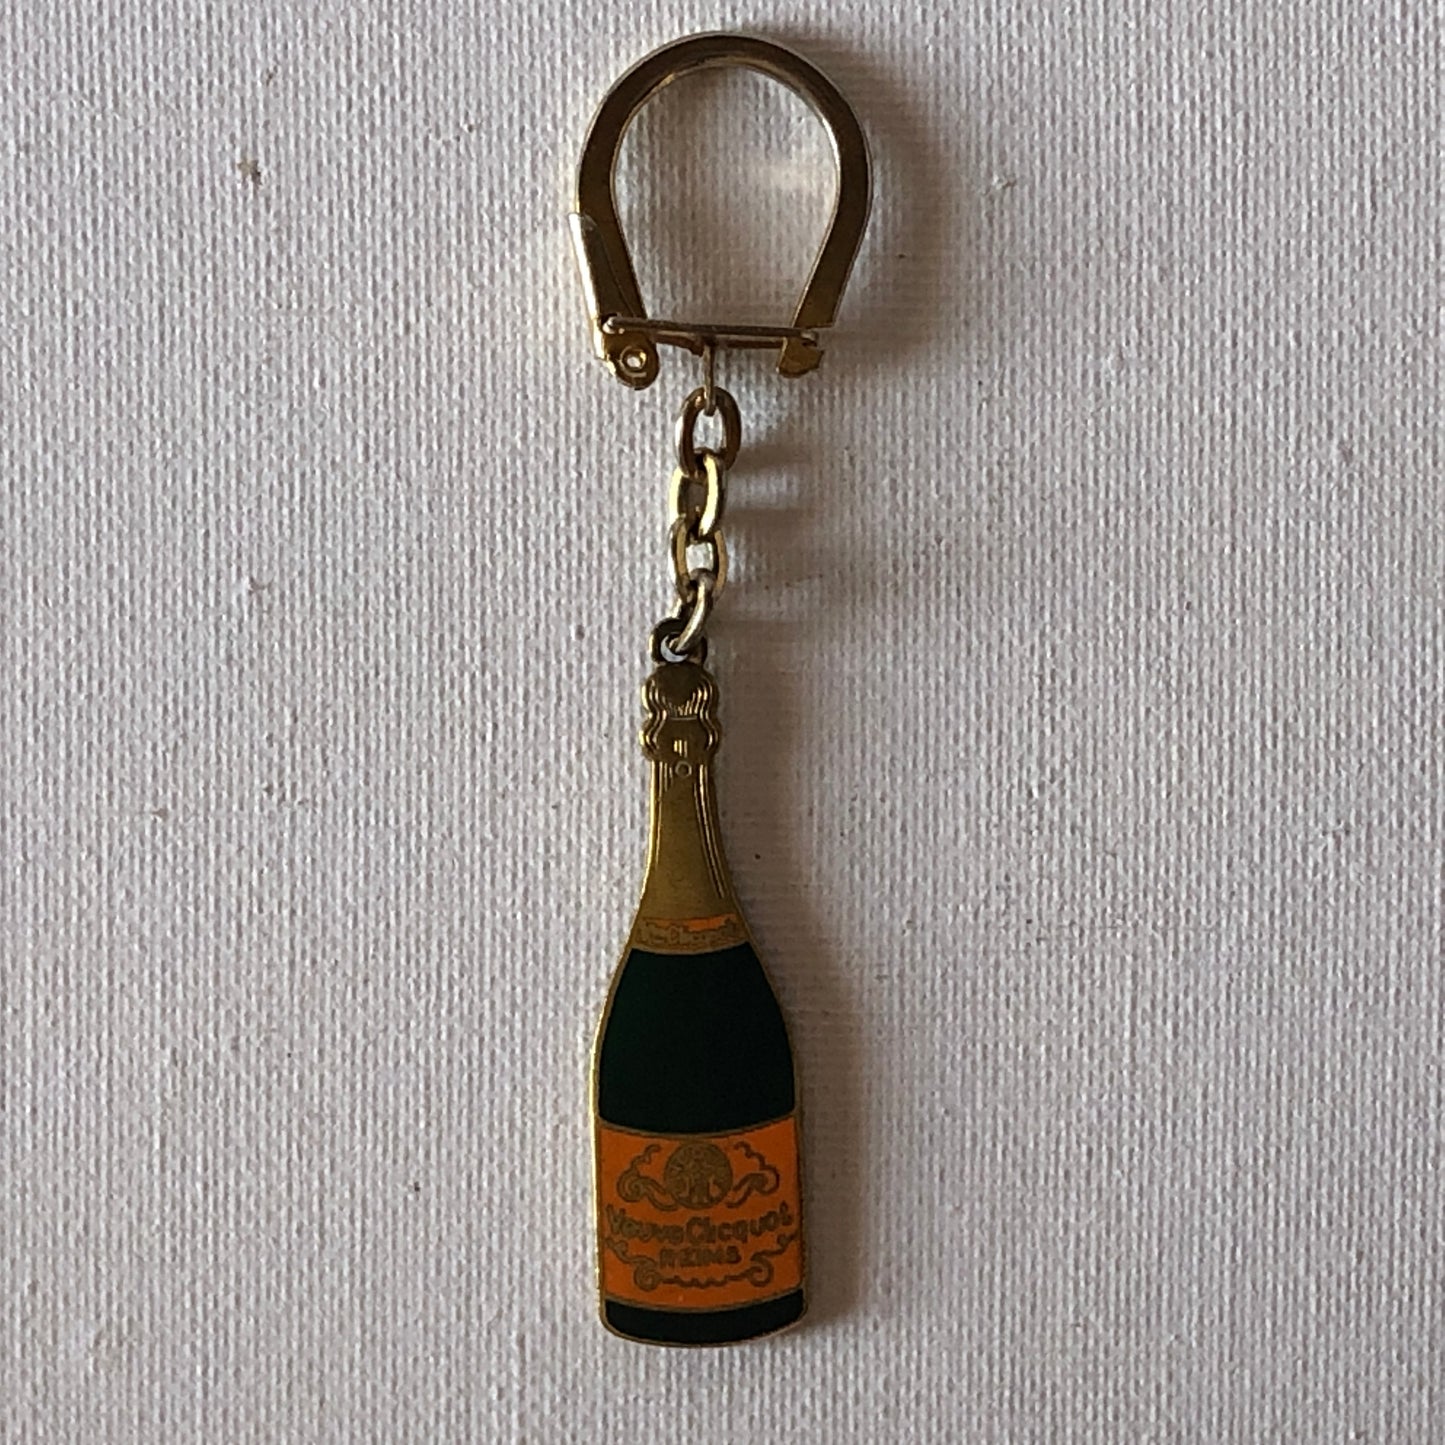 Vueve Clicquot, Portachiavi a Forma di Bottiglia di Champagne Vueve Clicquot - Raggi's Collectibles' Automotive Art